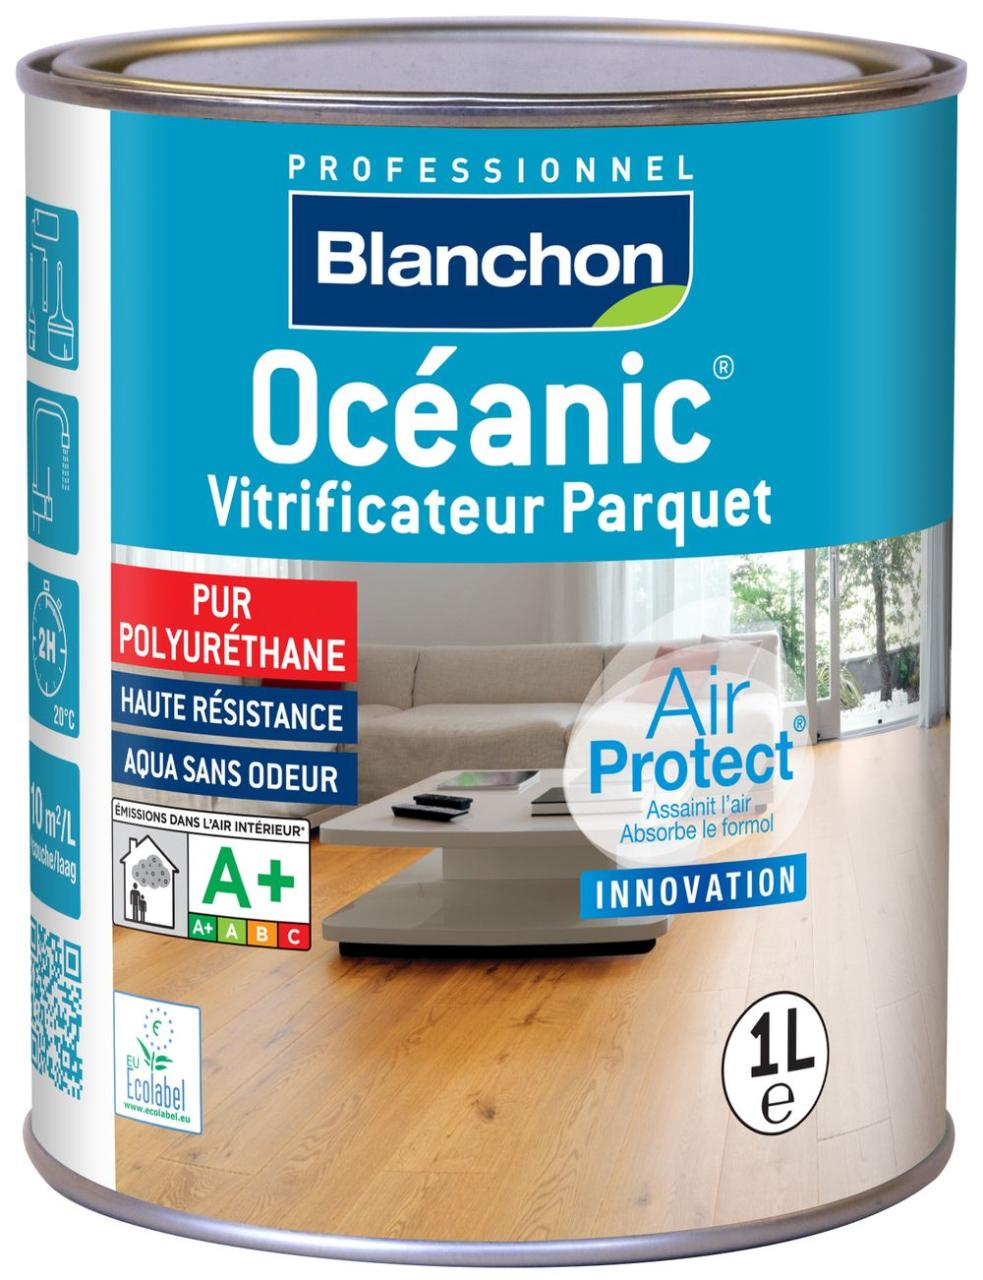 vitrificateur-parquet-oceanic-1l-chene-cire-blanchon-0